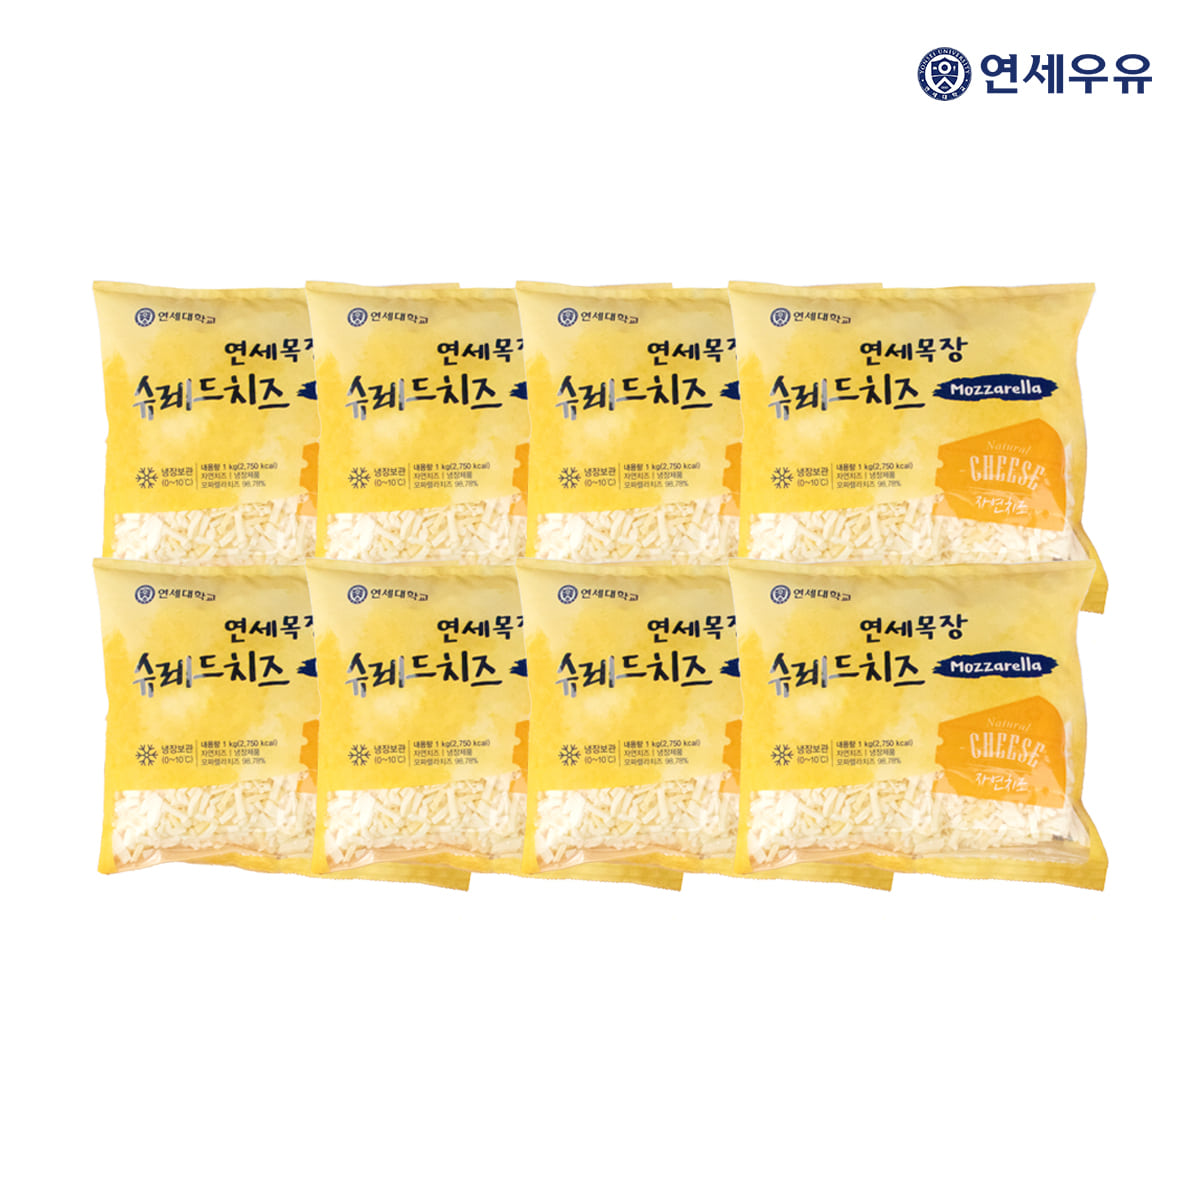 연세우유 슈레드 치즈 1kg 1박스(8개)